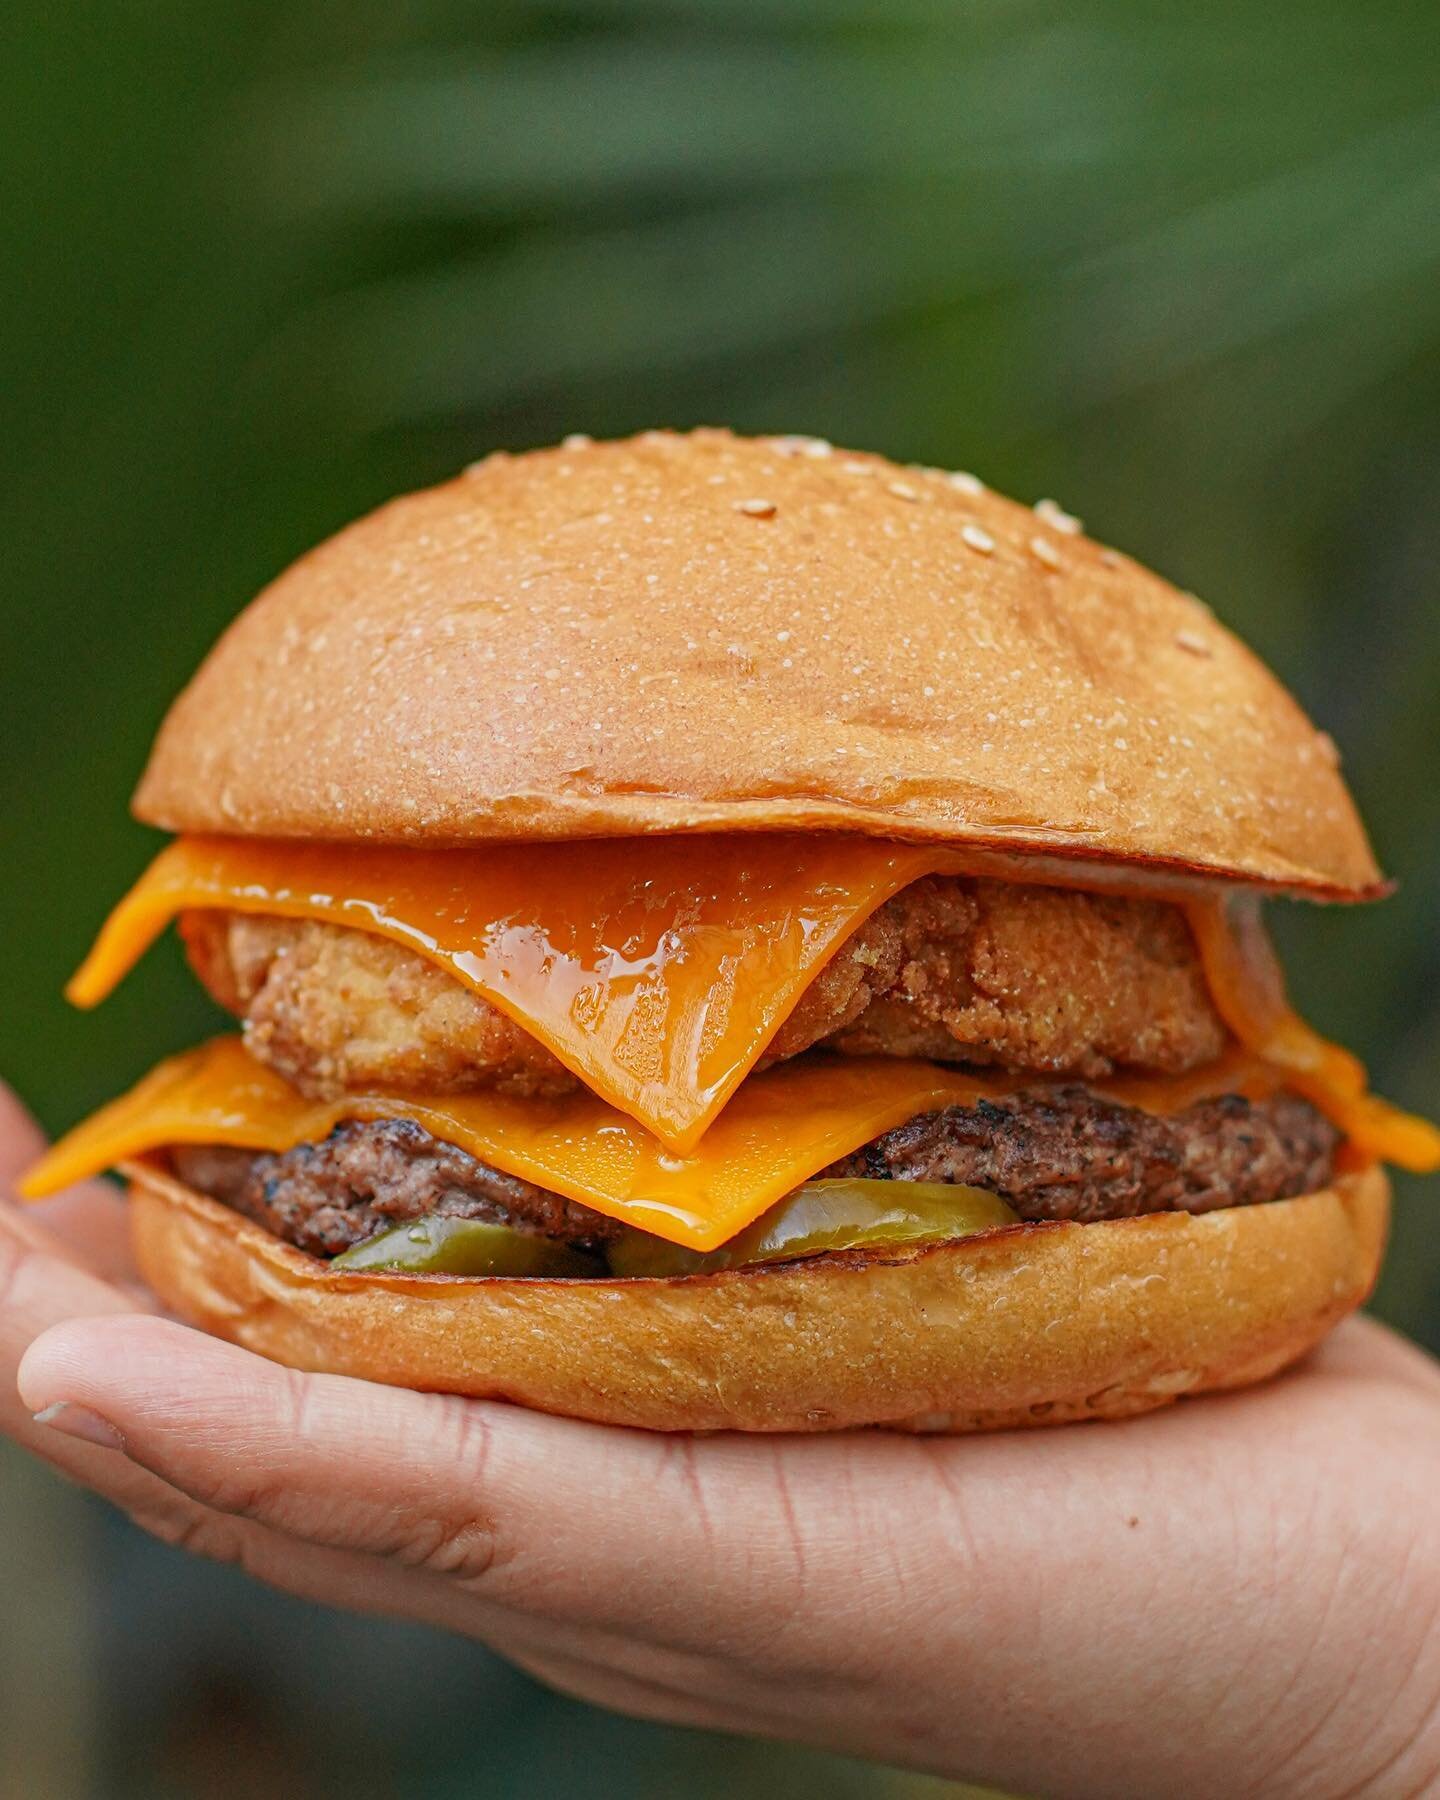 &iexcl;Atenci&oacute;n amantes de las hamburguesas! 🍔🎉⁣
⁣
Estamos emocionados de anunciar el lanzamiento de nuestra nueva hamburguesa &quot;The Double Mix Burger&quot; 🤤👀&nbsp;⁣
⁣
Prep&aacute;rate para saborear una deliciosa combinaci&oacute;n de